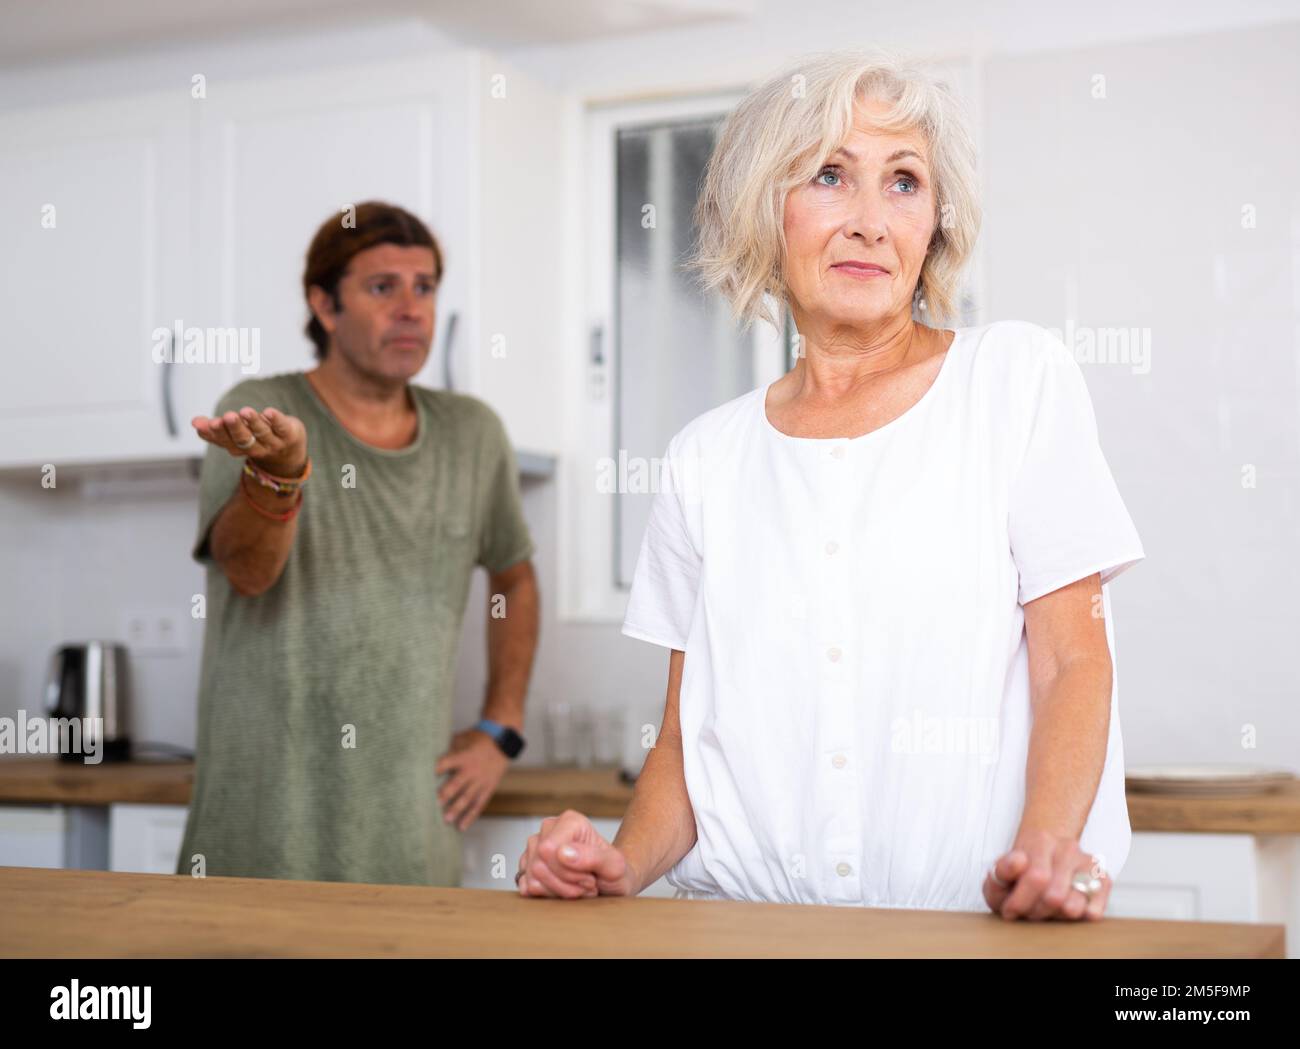 Reife Ehefrau spricht nicht nach Unstimmigkeiten mit dem Mann dahinter  Stockfotografie - Alamy